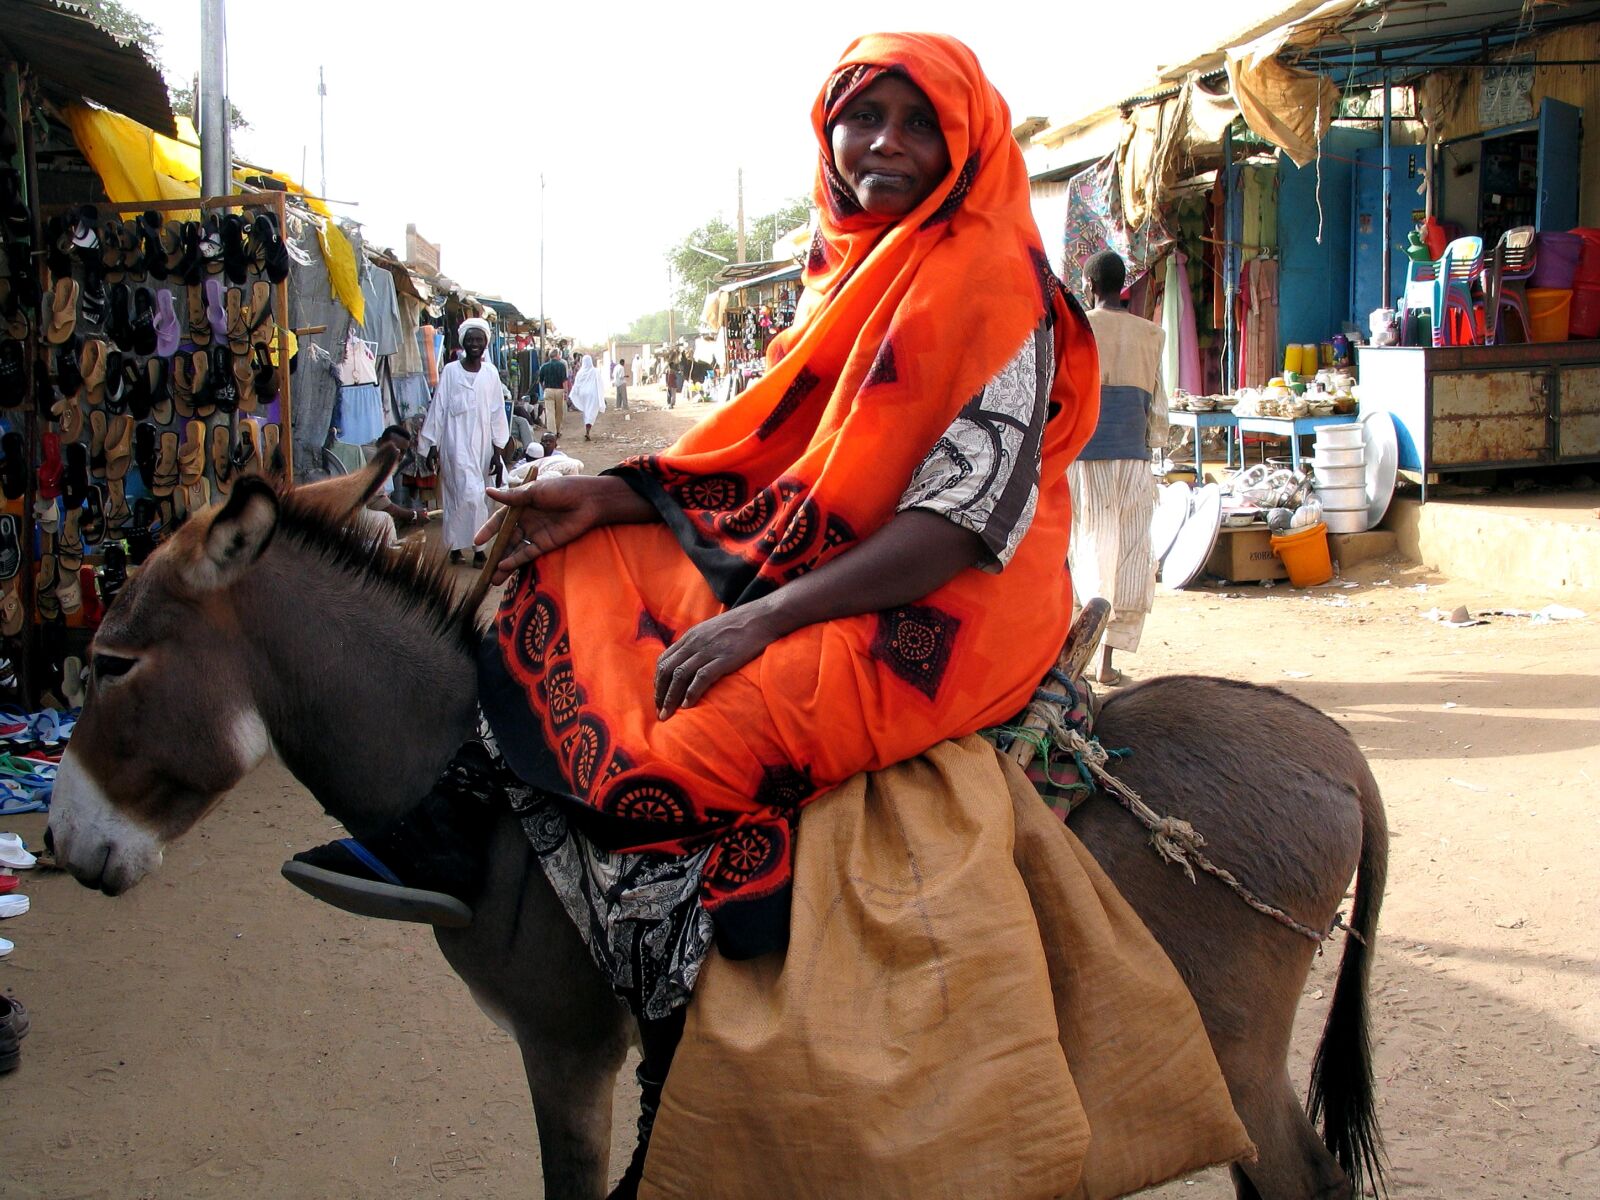 Canon POWERSHOT G5 sample photo. Female, donkey, market, sudan photography